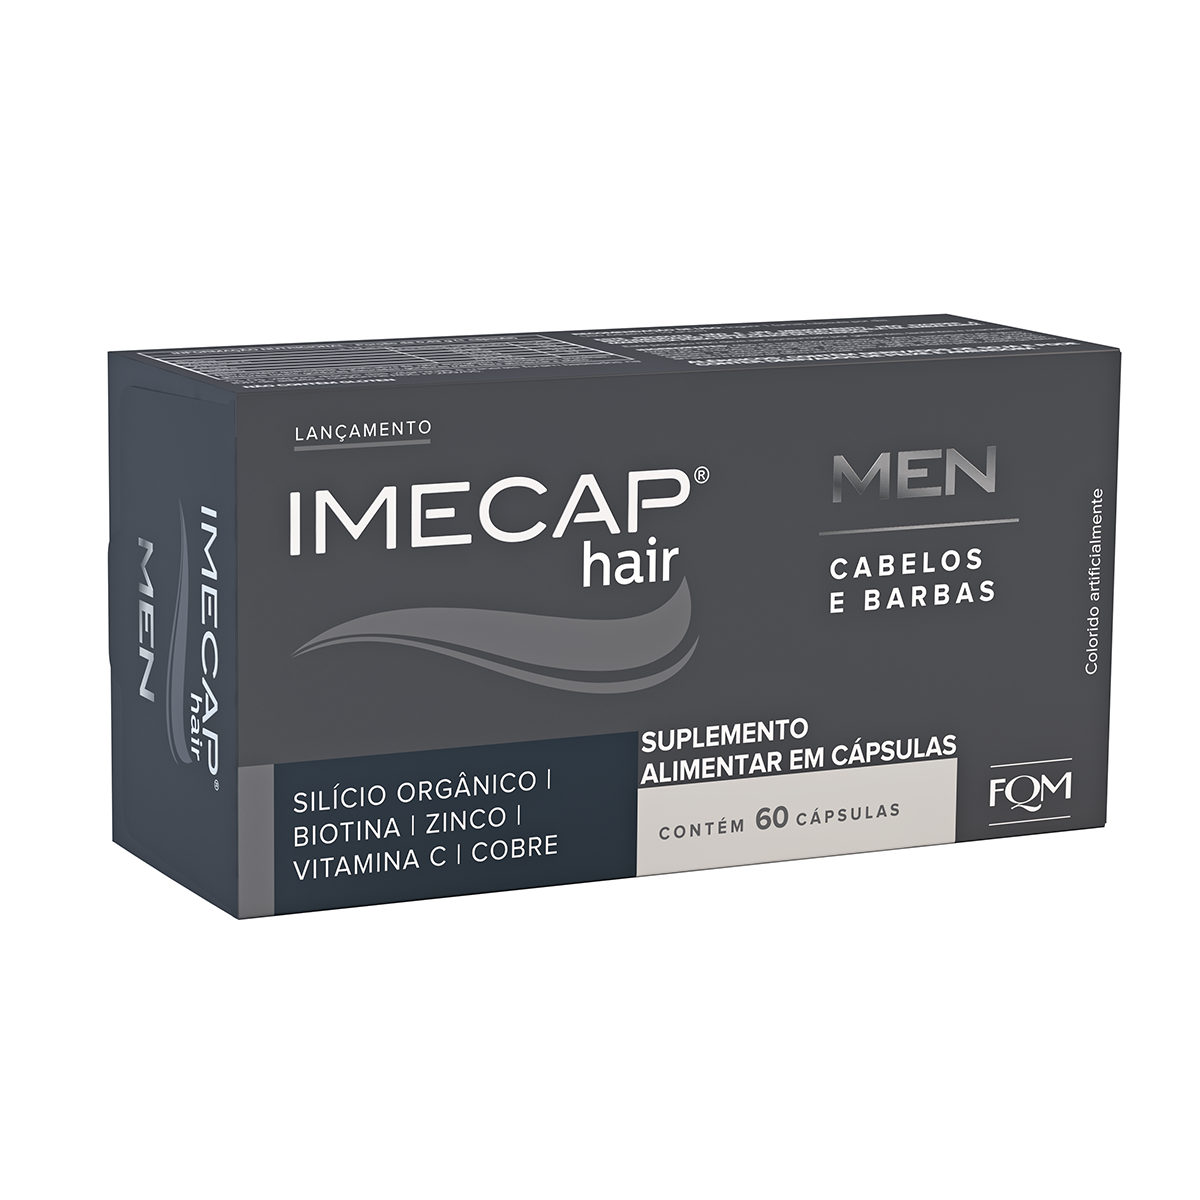 Suplemento Alimentar Imecap Hair Men 60 cápsulas 60 cápsulas